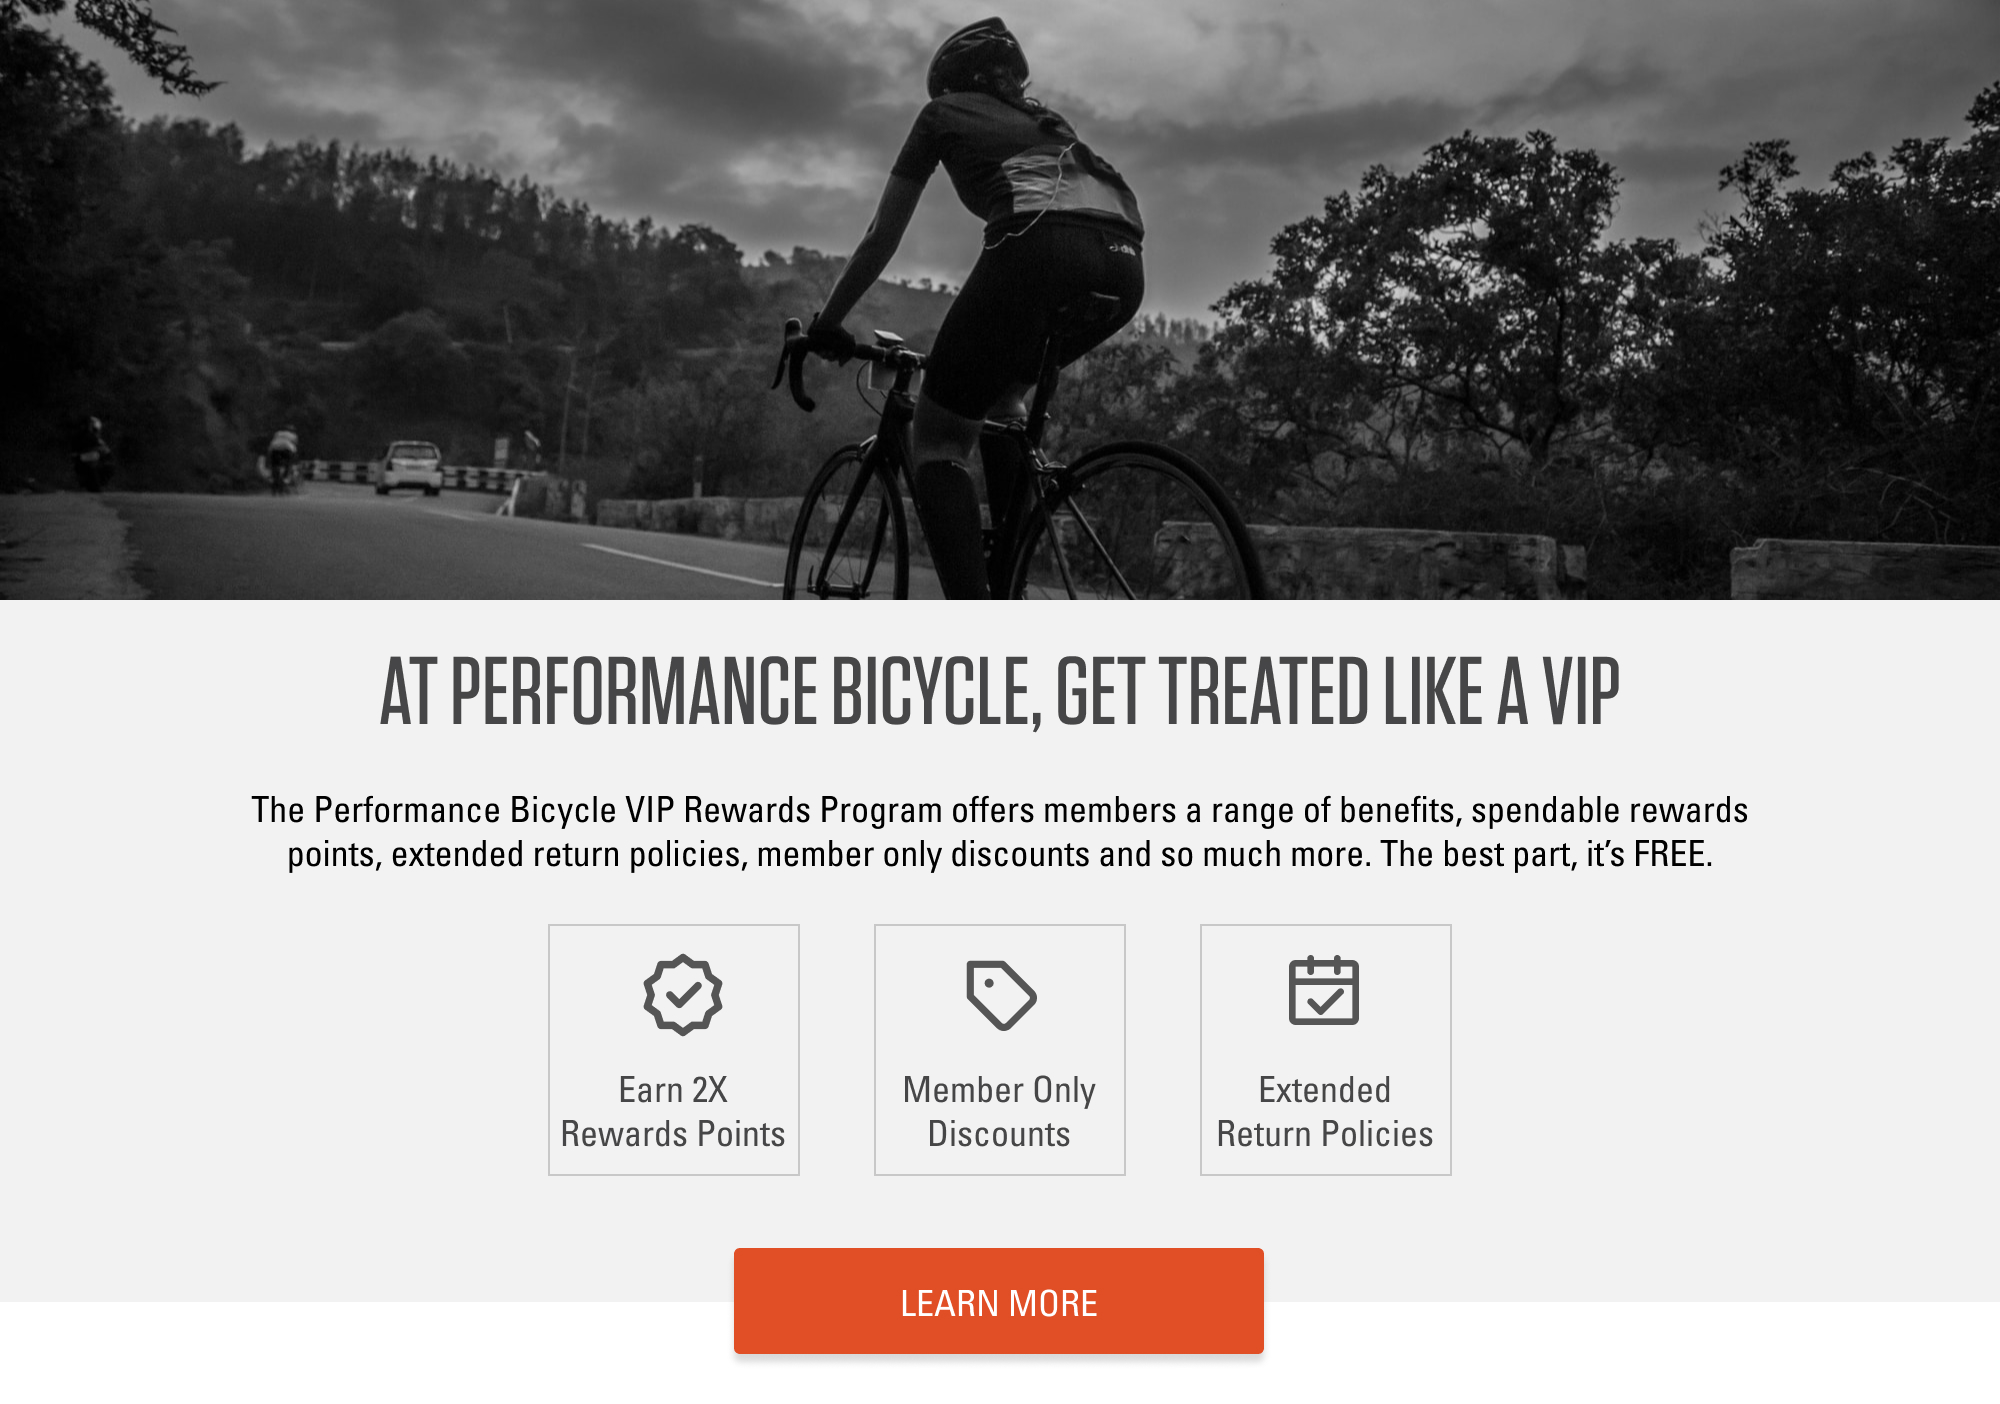 top online bike stores